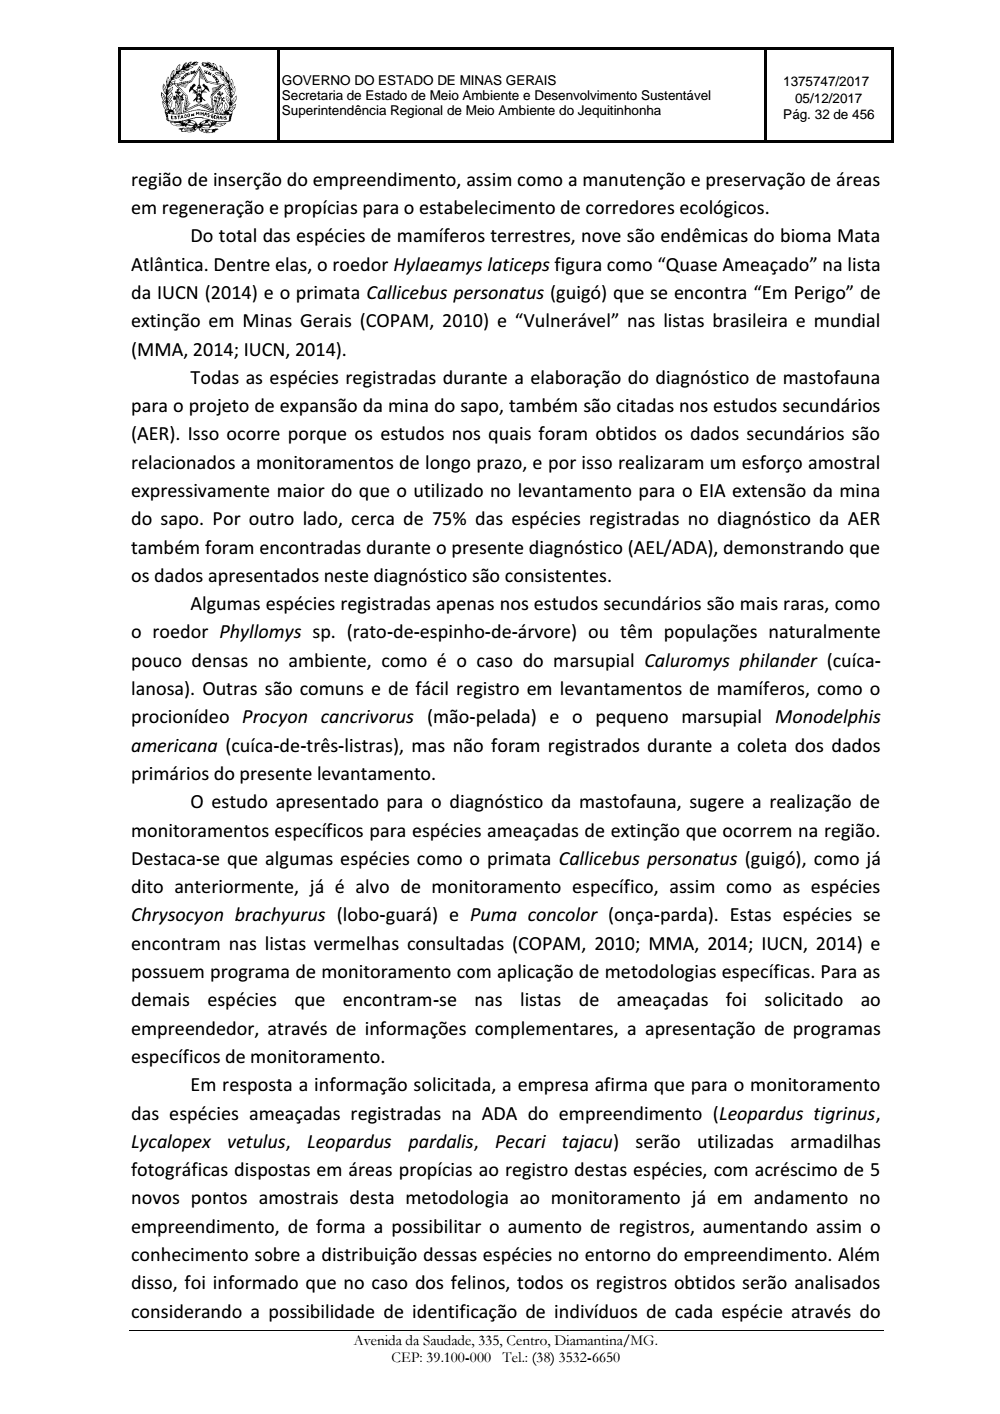 Page 32 from Parecer único da Secretaria de estado de Meio Ambiente e Desenvolvimento Sustentável (SEMAD)